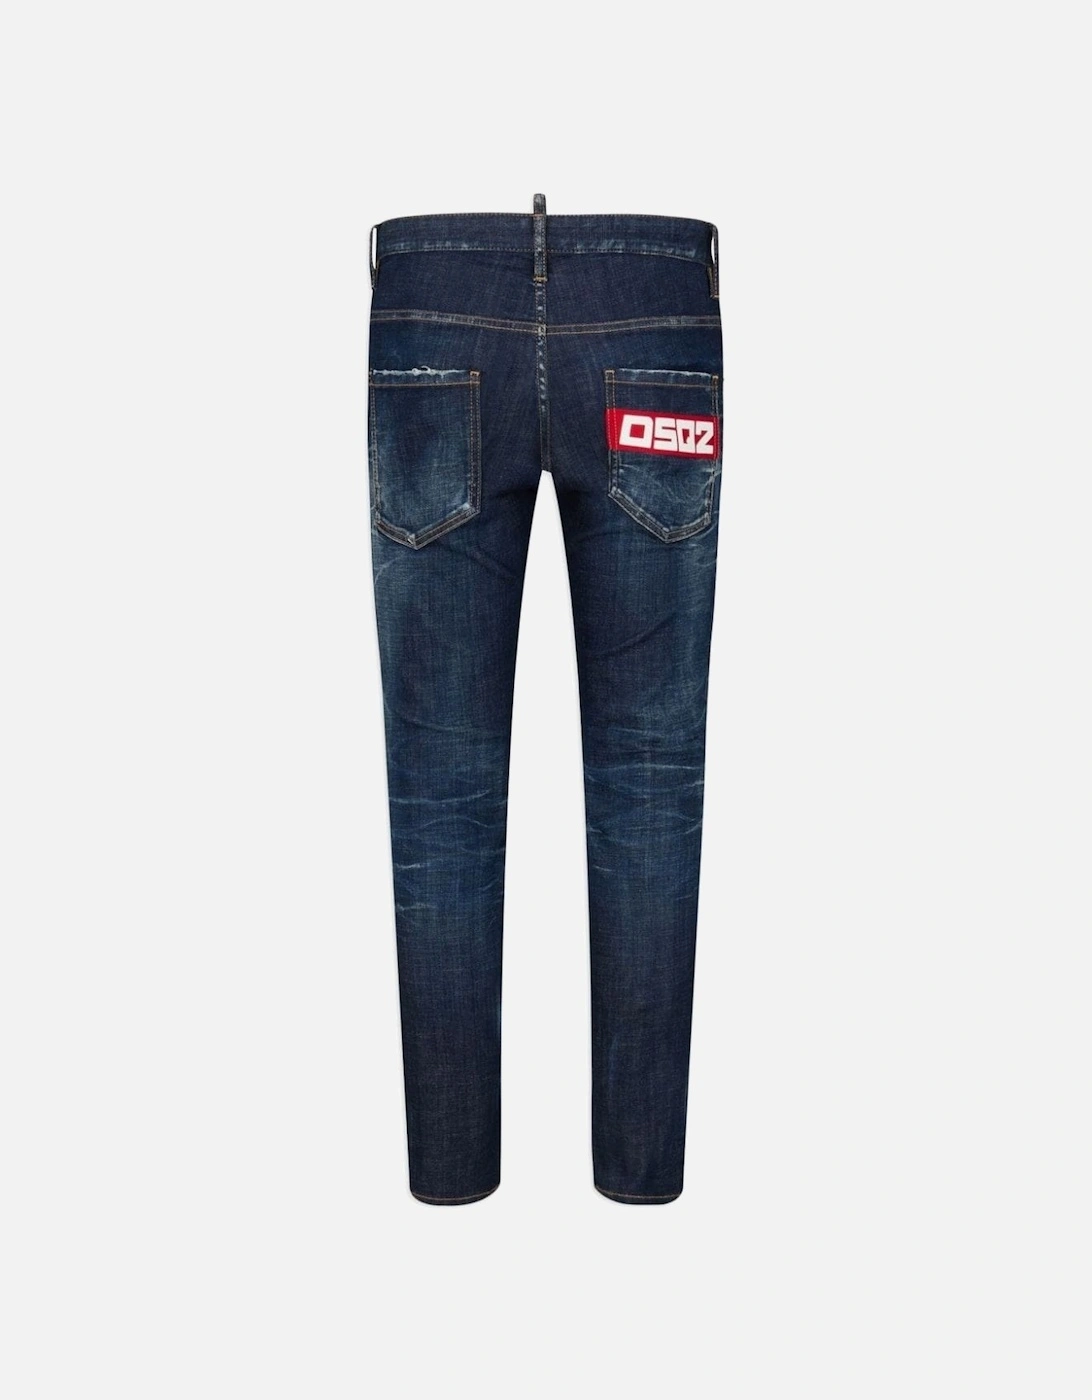 Skater Slim Cut Vintage Jeans Blue